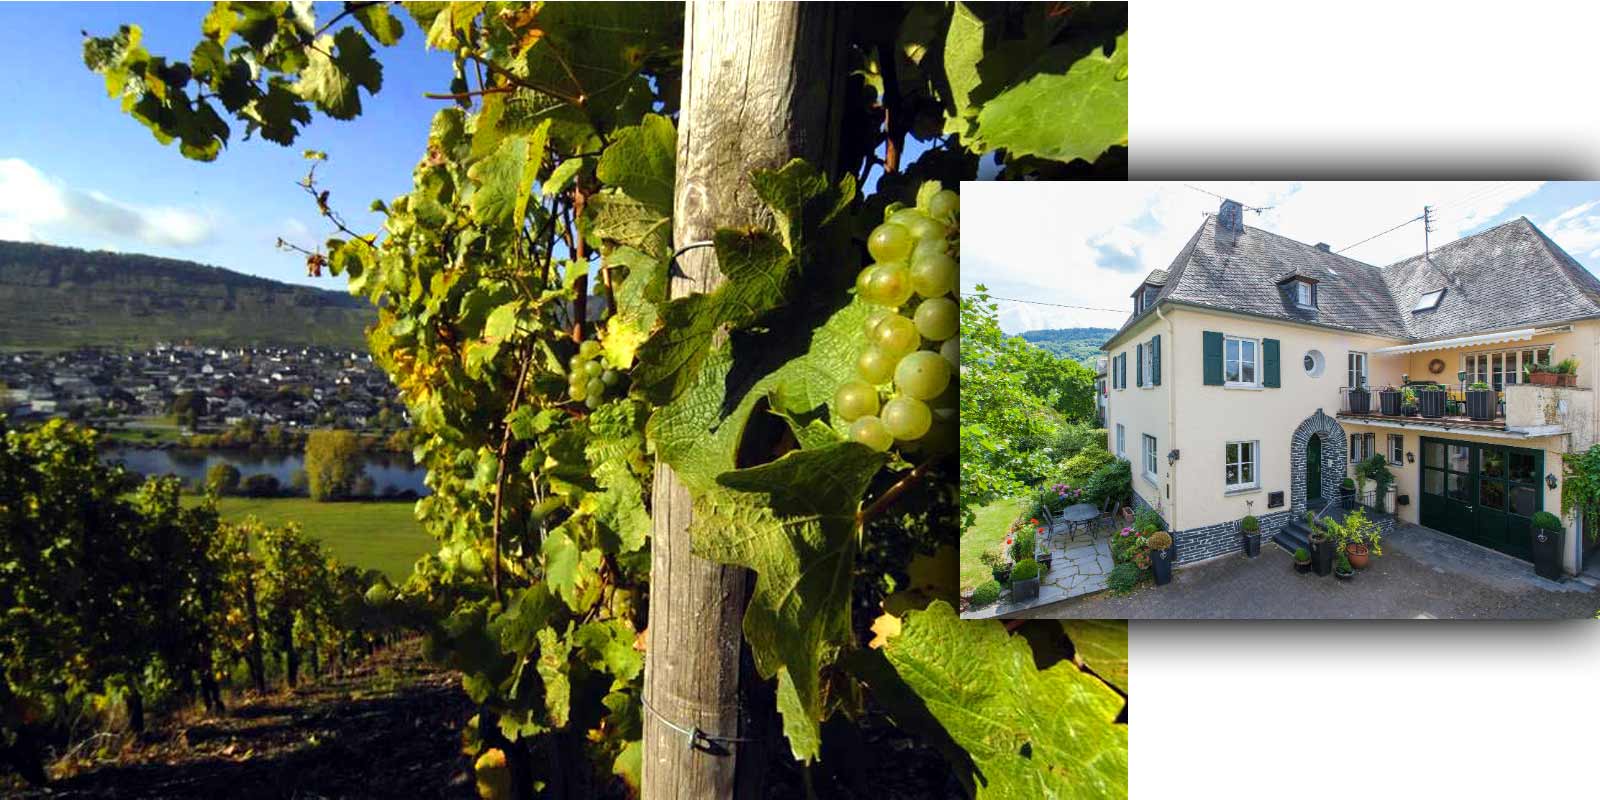 Crama Grans-Fassian - regiunea viticola Moselle Gerhard Grans a preluat afacerea viticola de la tatal sau Matthias in 1982 si a extins suprafata de podgorie de 4 hectare la 9,5 hectare in prezent, 88% din aceasta este plantata cu Riesling, 10% Pinot Blanc si 2% Pinot Gris. Cele mai bune locatii ale cramei sunt, de asemenea, locatii clasificate - sunt clasificate in cea mai inalta categorie de cultivare.